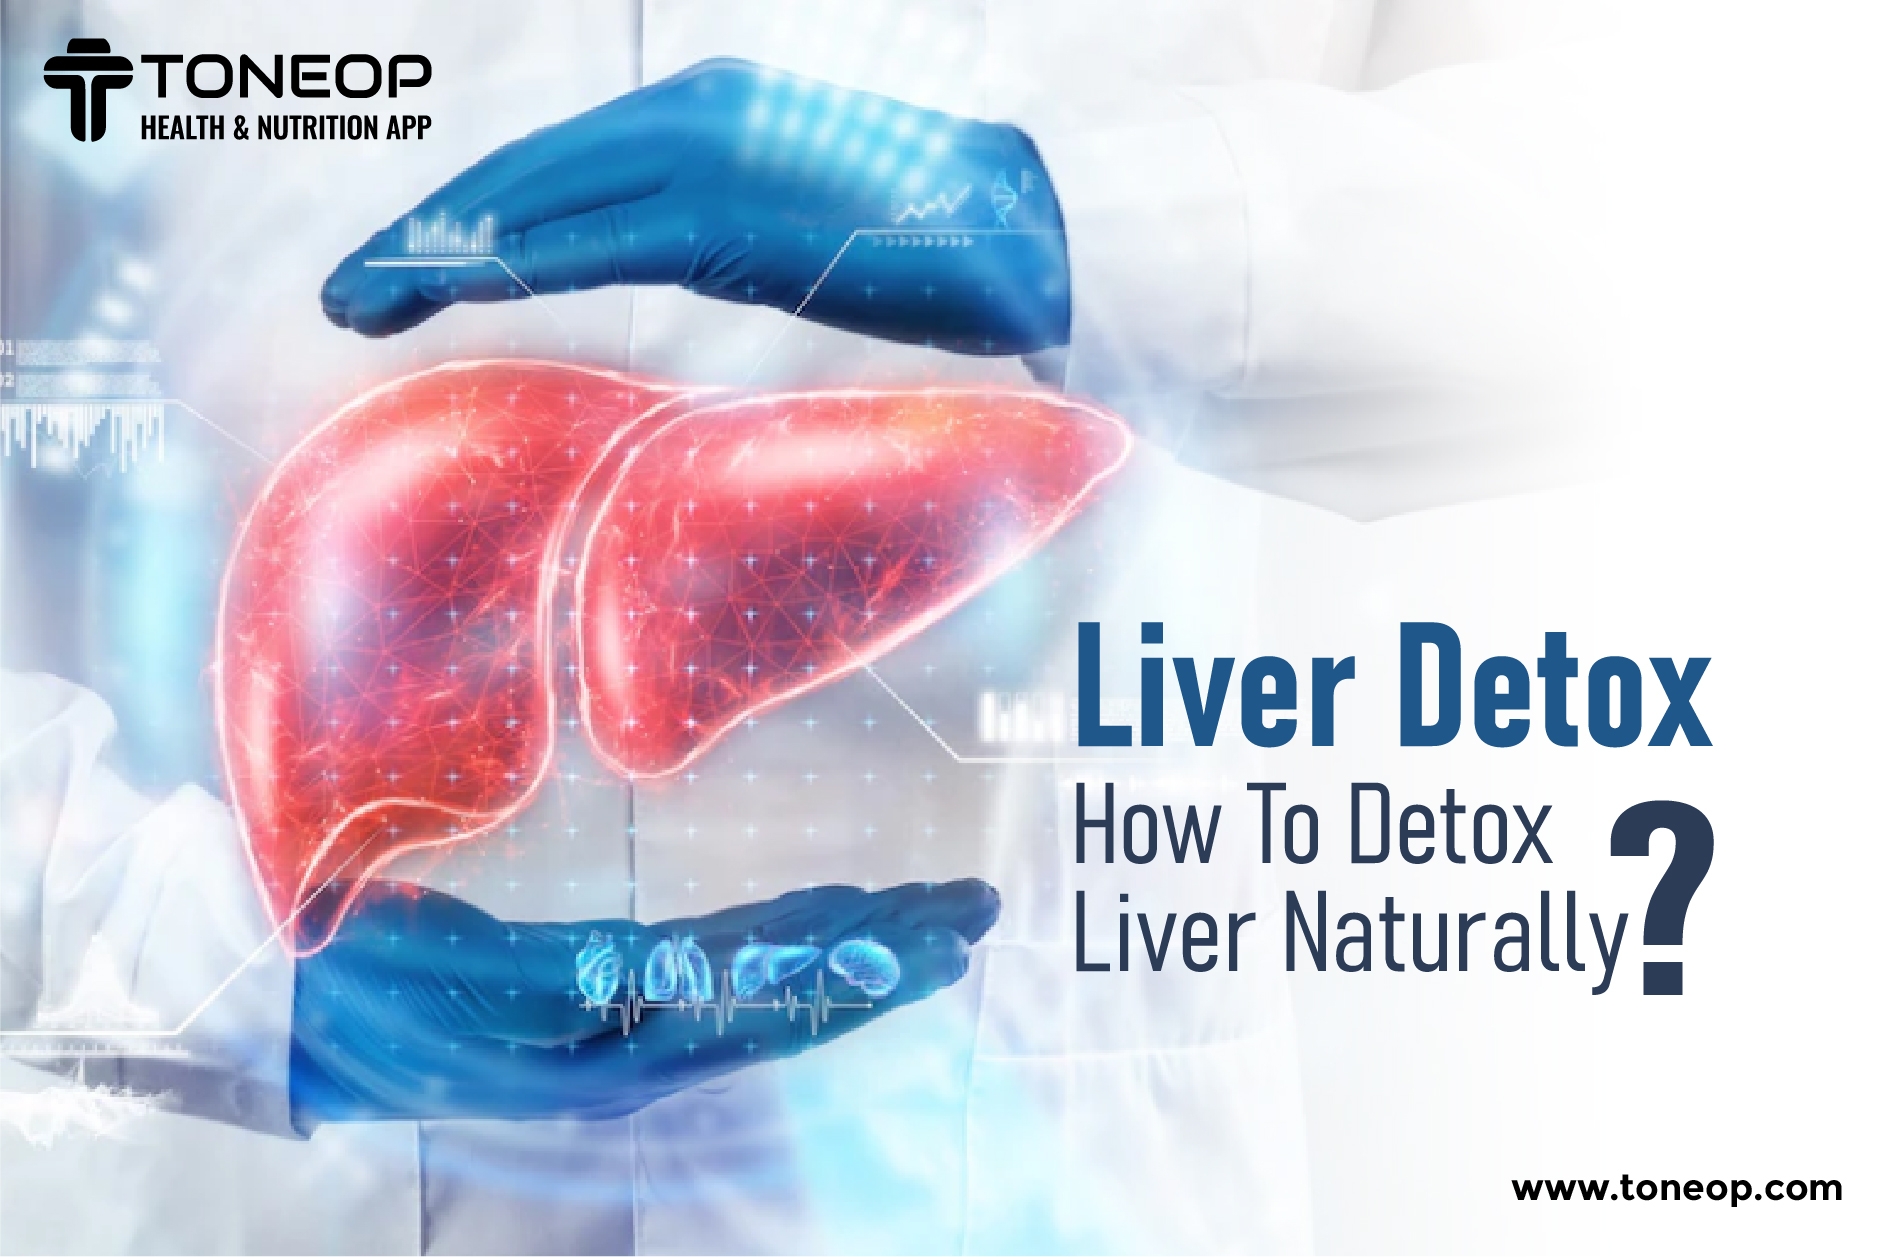 Liver Detox: How To Detox Liver Naturally?